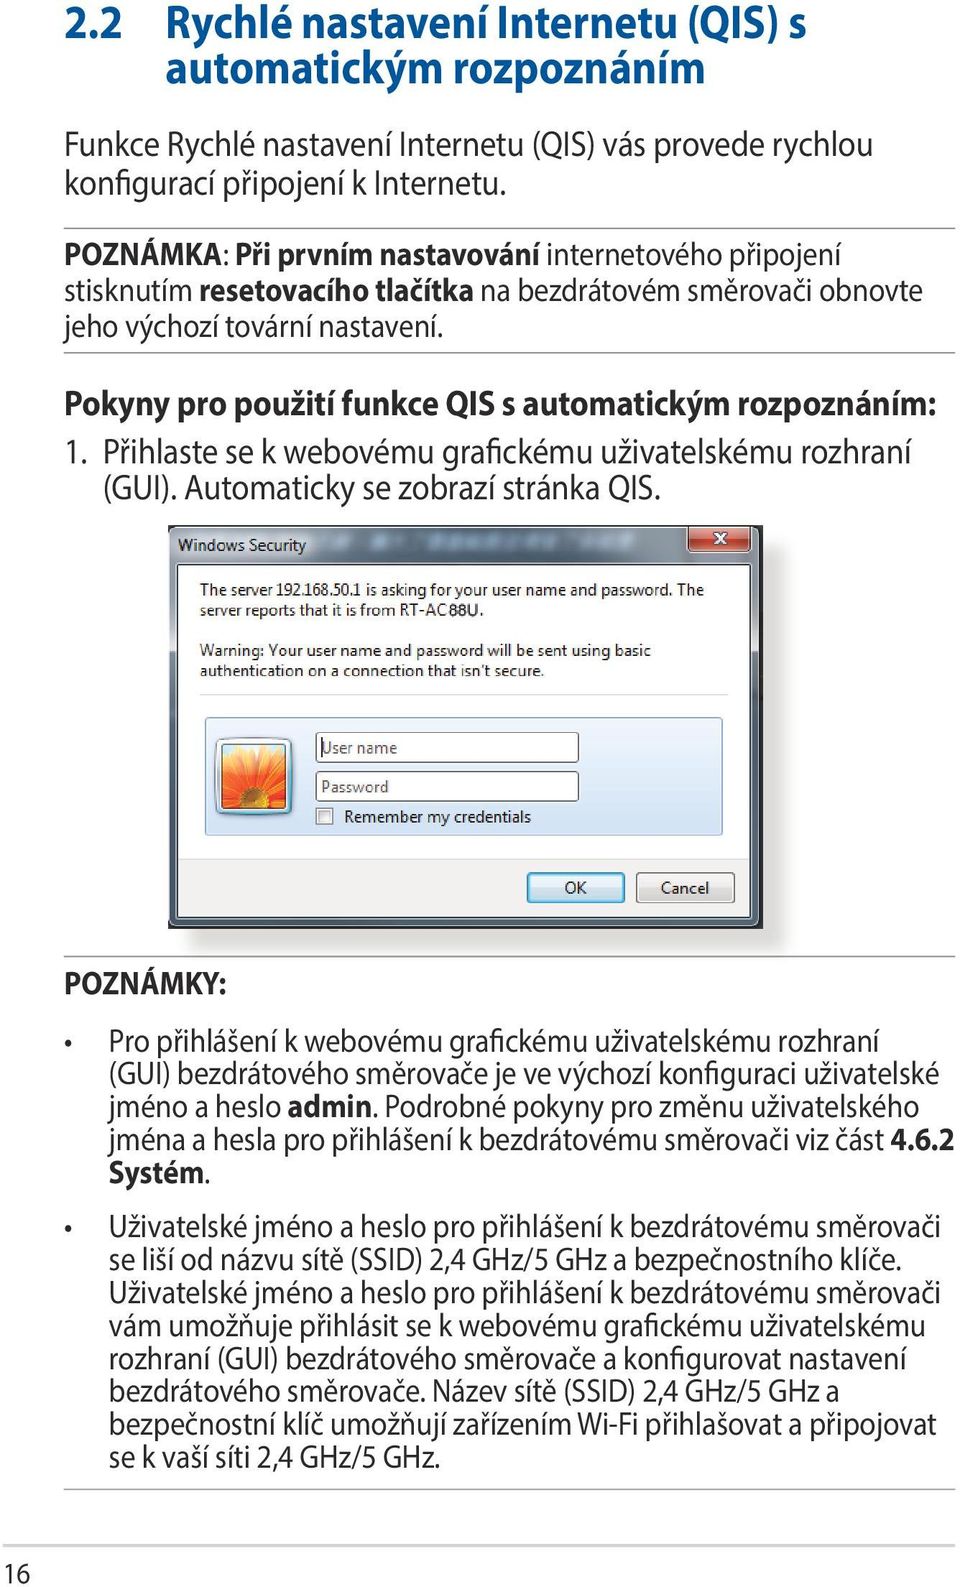 Pokyny pro použití funkce QIS s automatickým rozpoznáním: 1. Přihlaste se k webovému grafickému uživatelskému rozhraní (GUI). Automaticky se zobrazí stránka QIS.